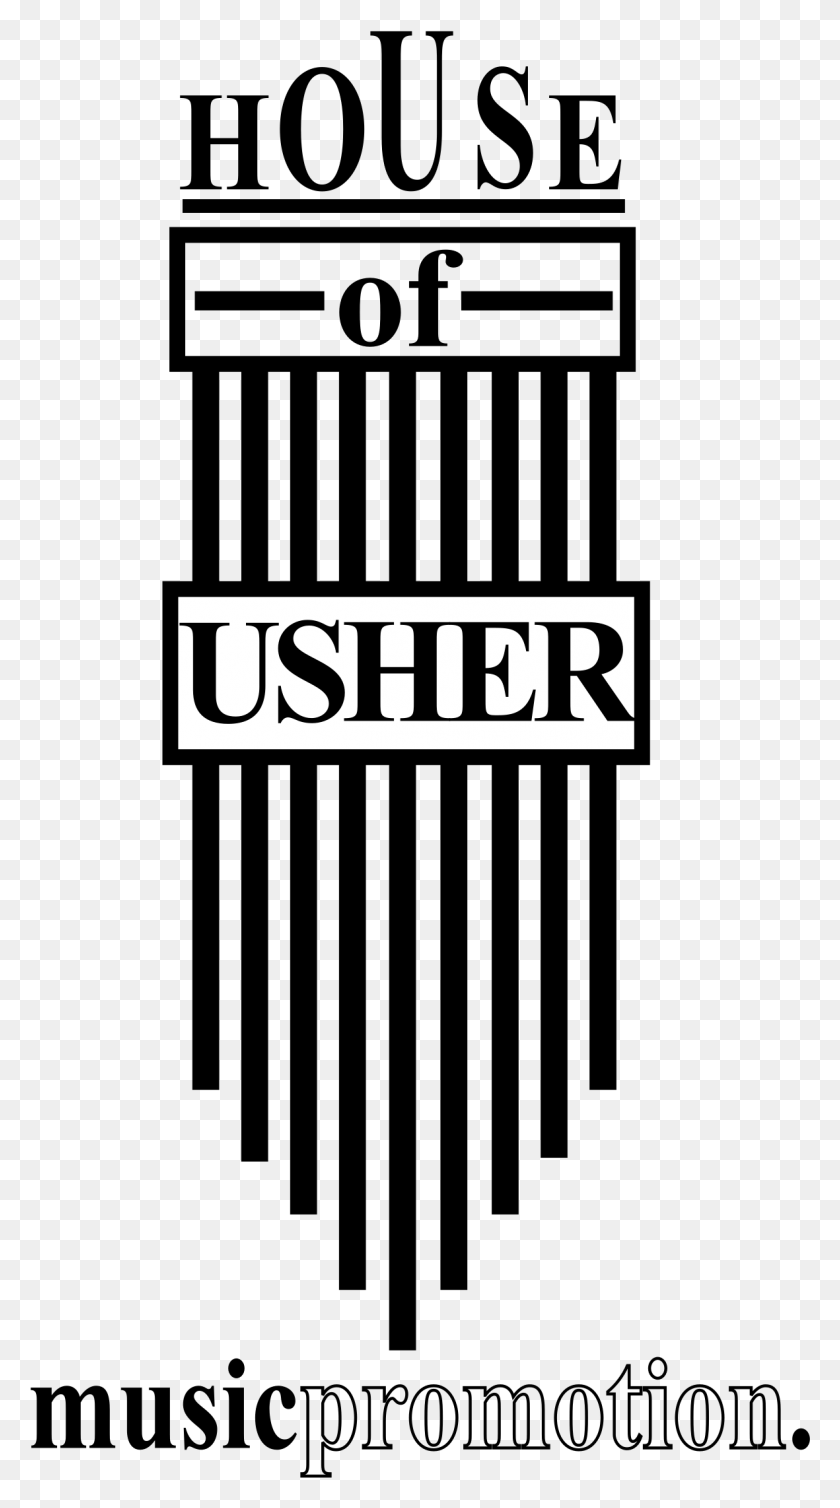 1181x2193 House Of Usher Music Promotion Logo Прозрачный Плакат, Логотип, Символ, Товарный Знак Hd Png Скачать